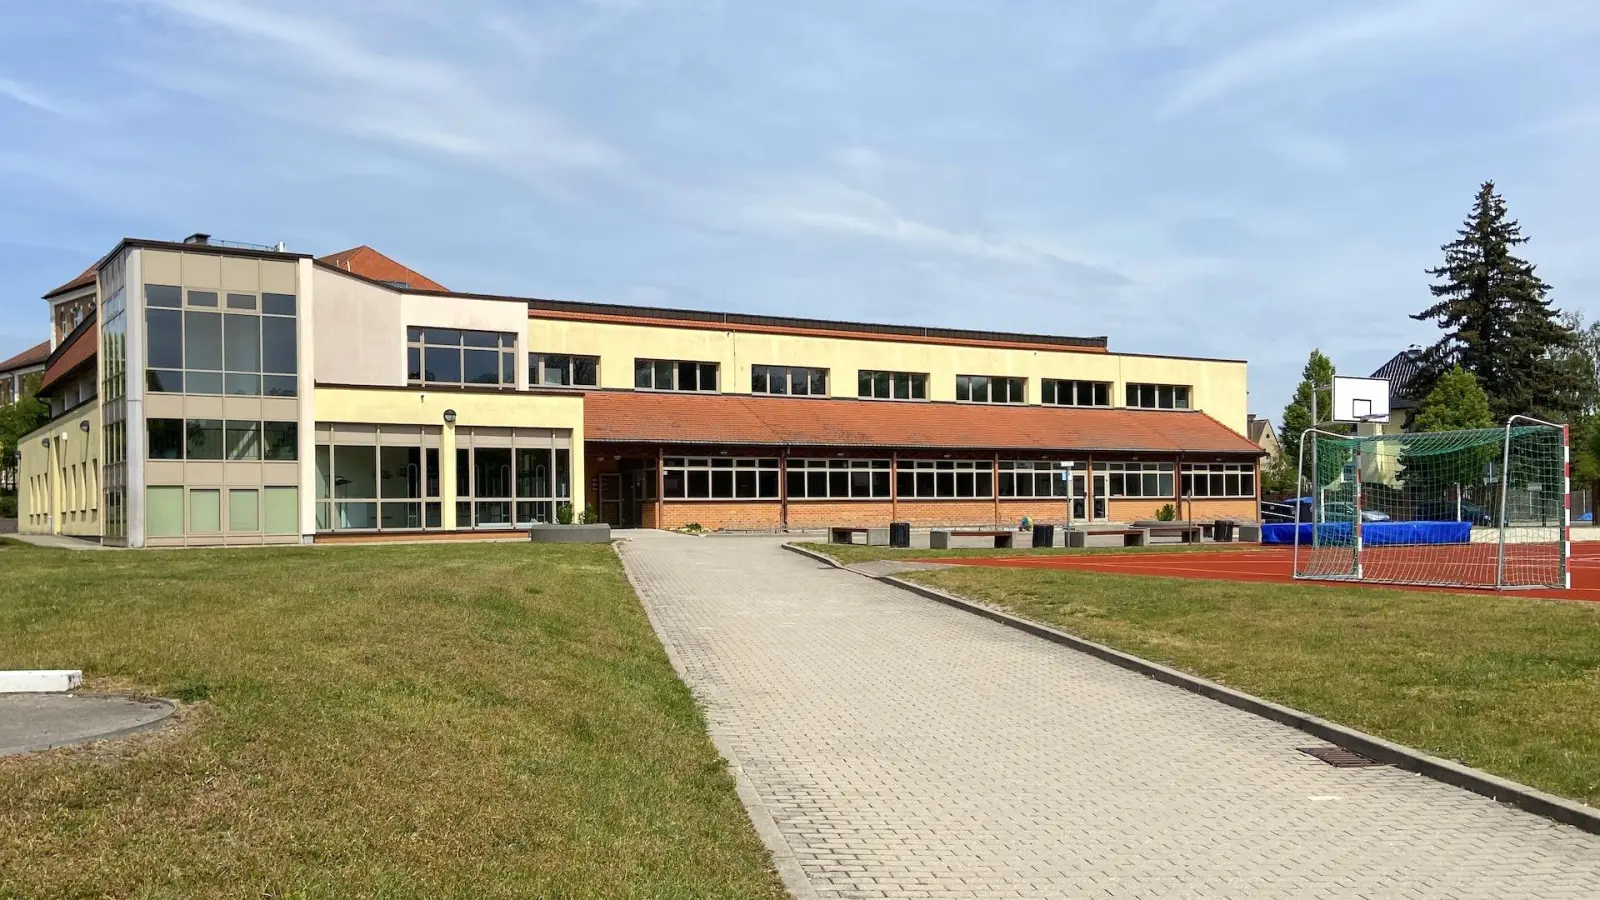 Mehrzweckhalle und Sporthalle der Oberschule für Vereine derzeit tabu (Foto: taucha-kompakt.de)